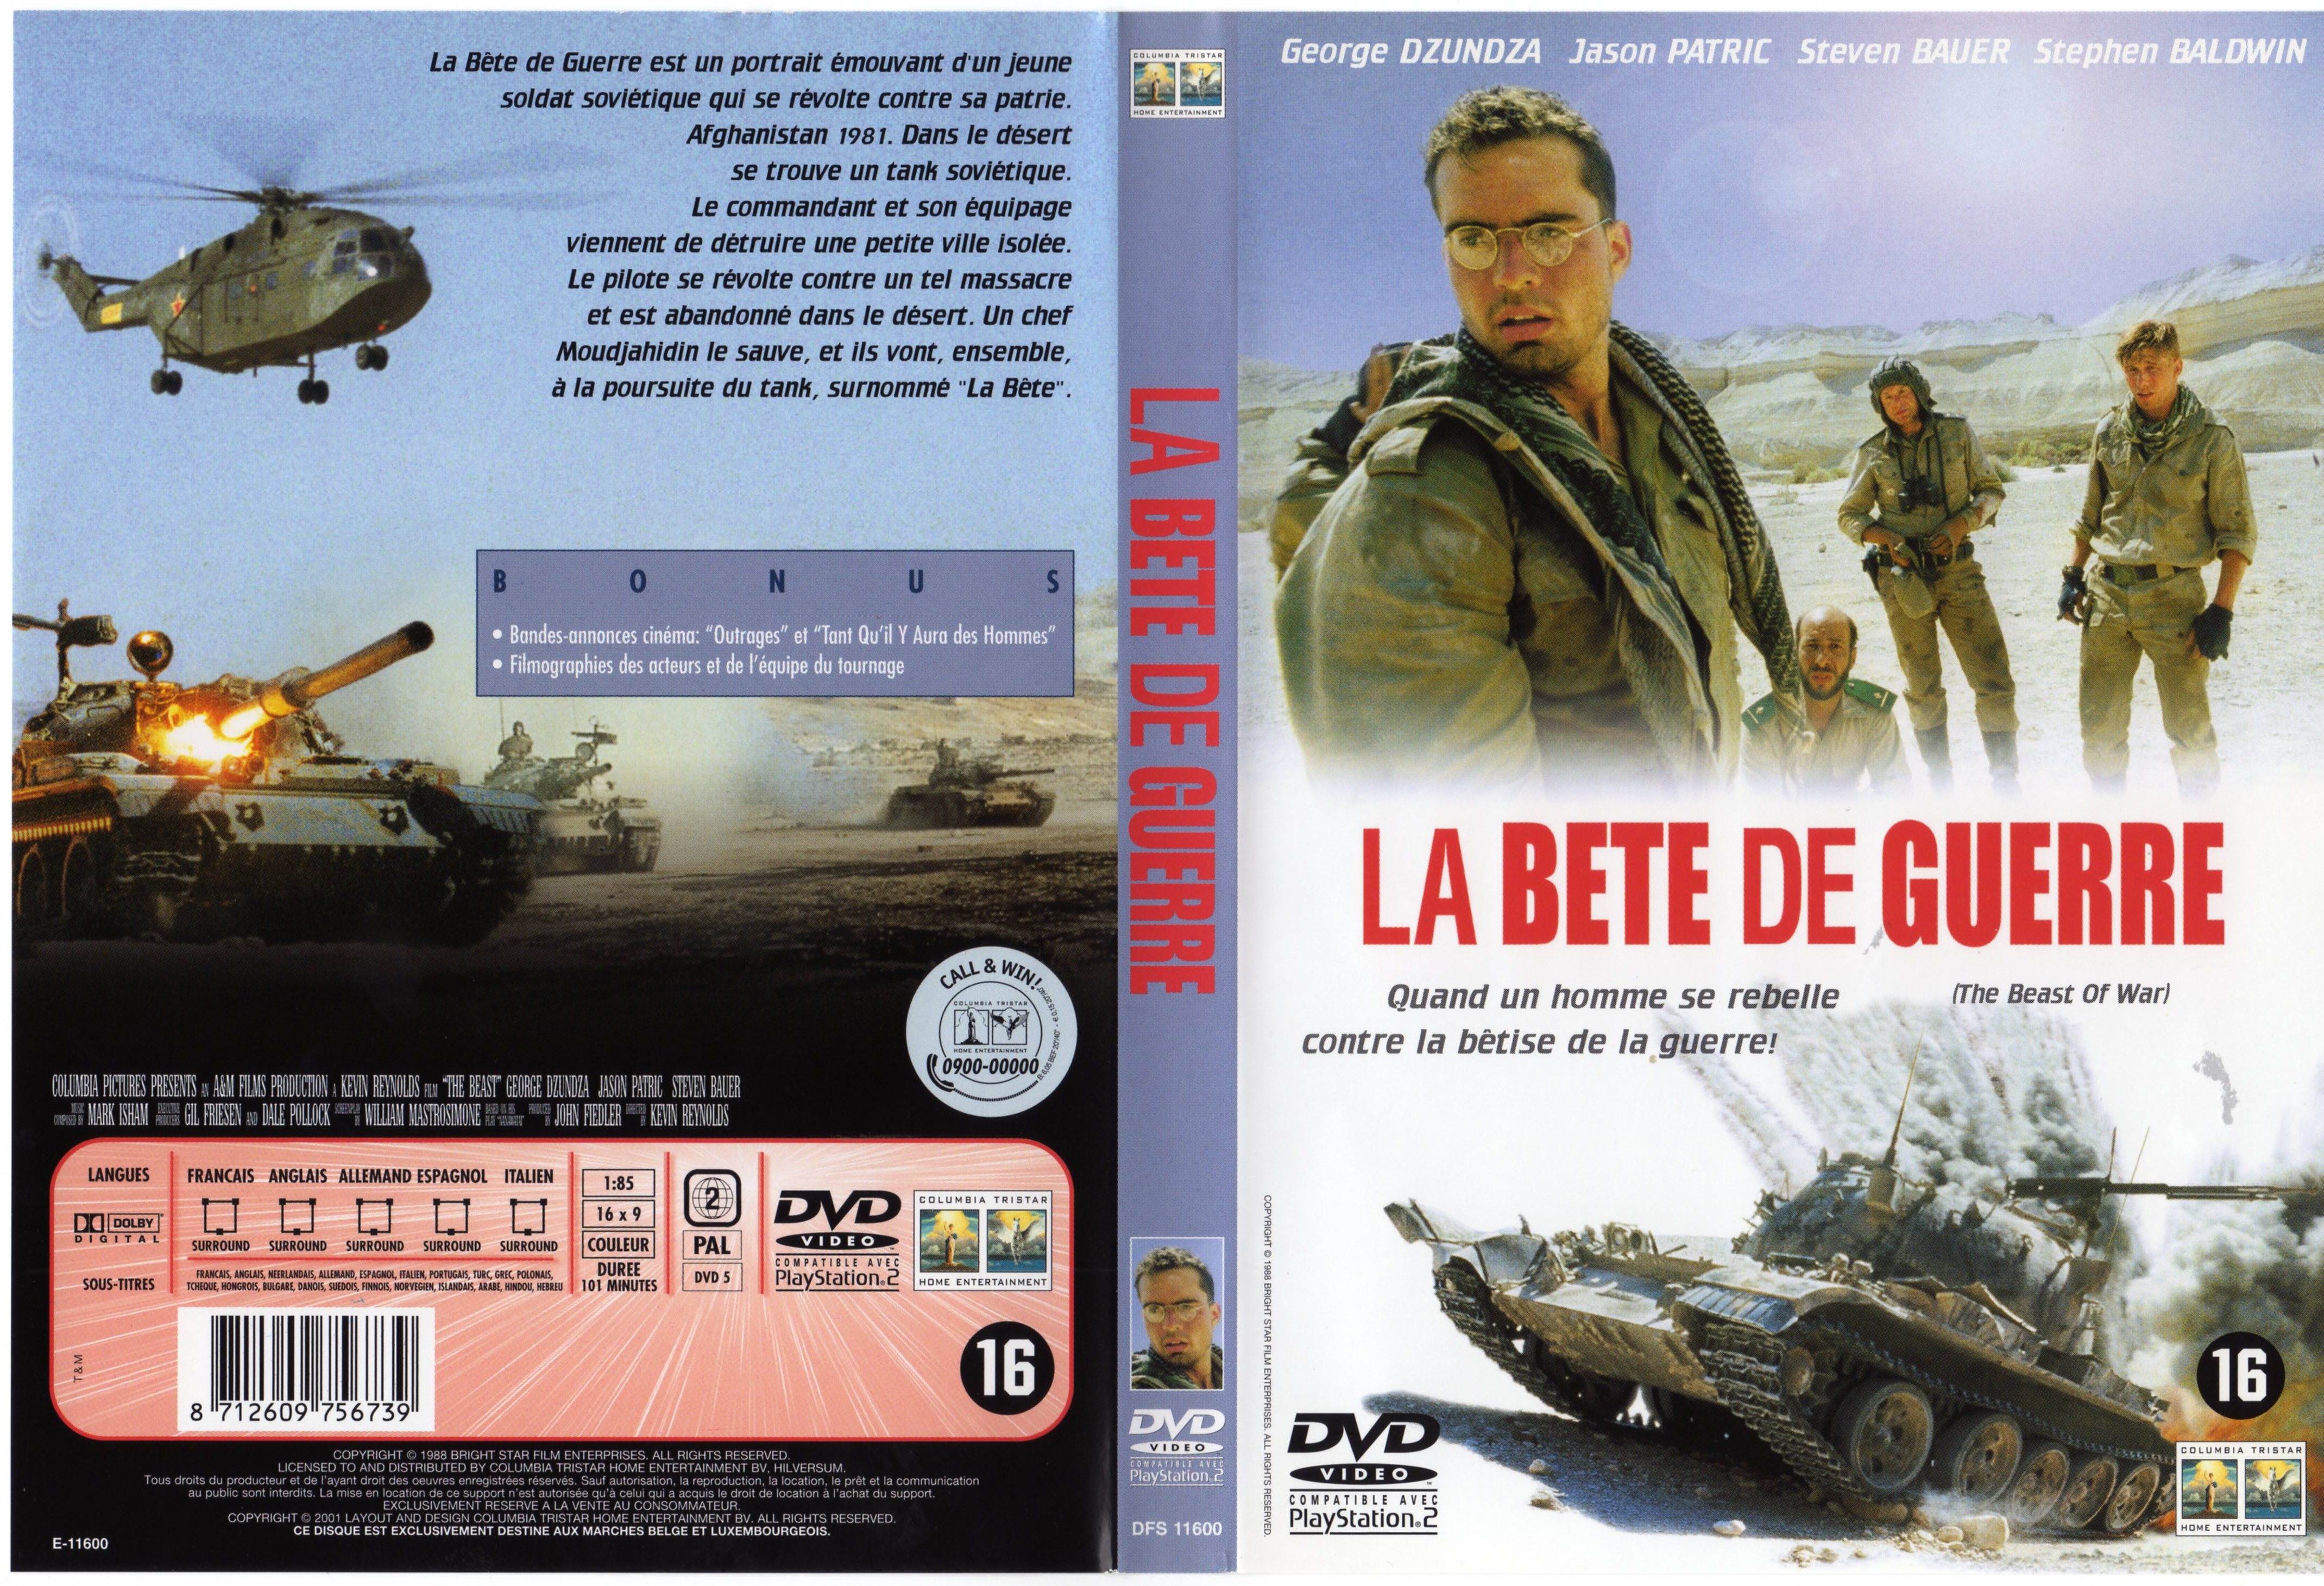 Jaquette DVD La bete de guerre v3